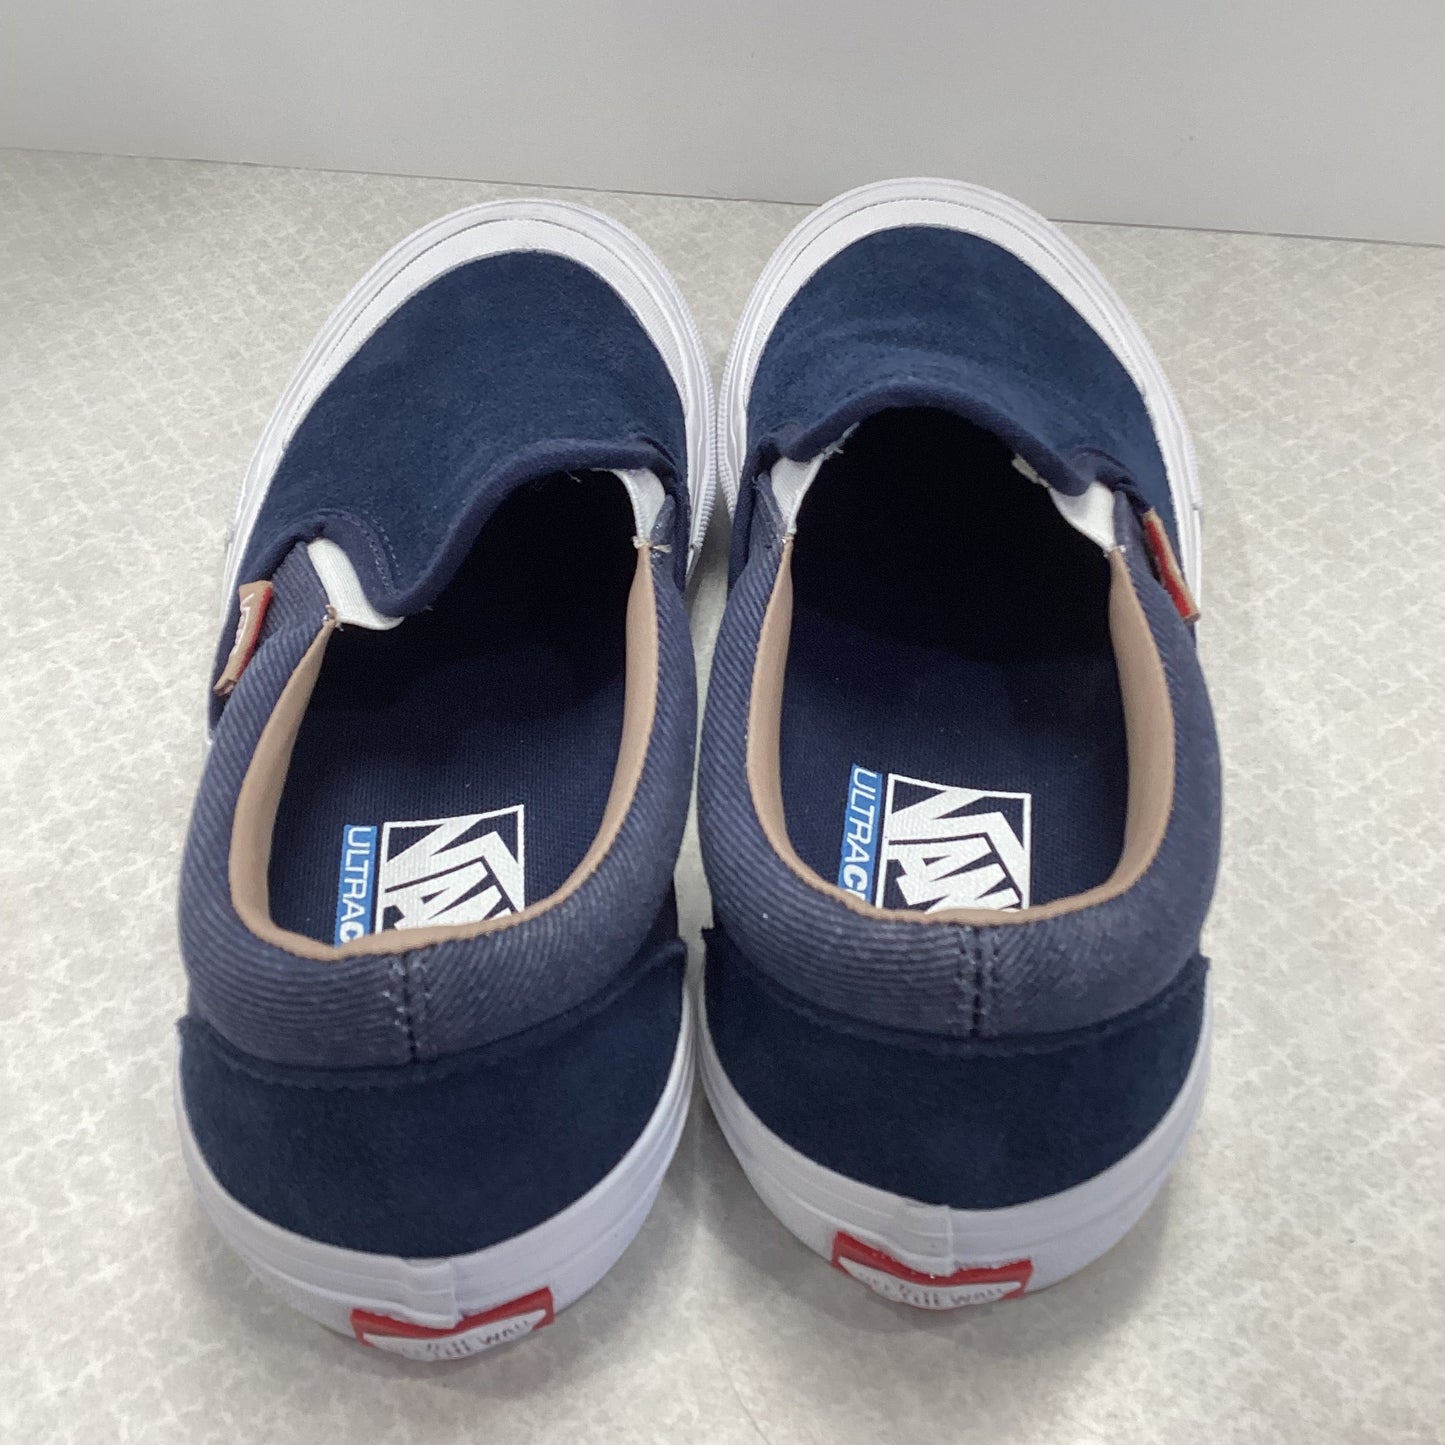 Blue Shoes Sneakers Vans, Size 8.5